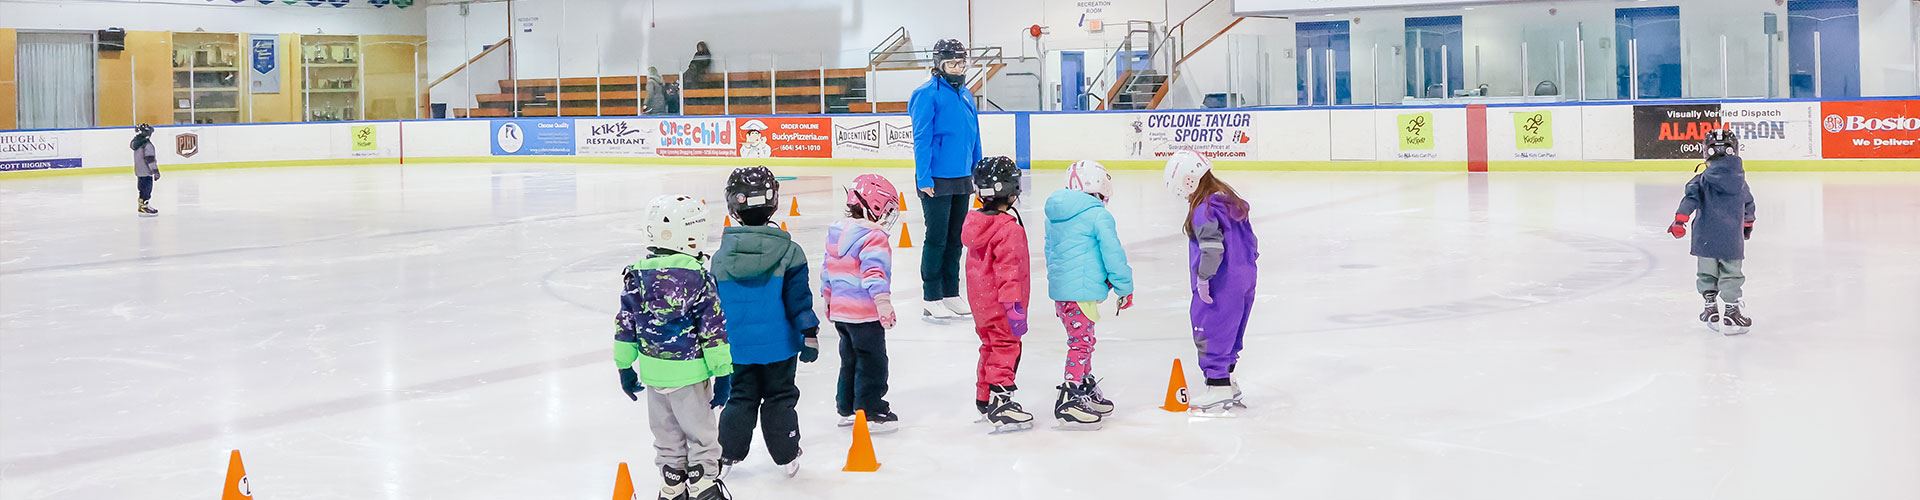 kids wearing ice skates at arena